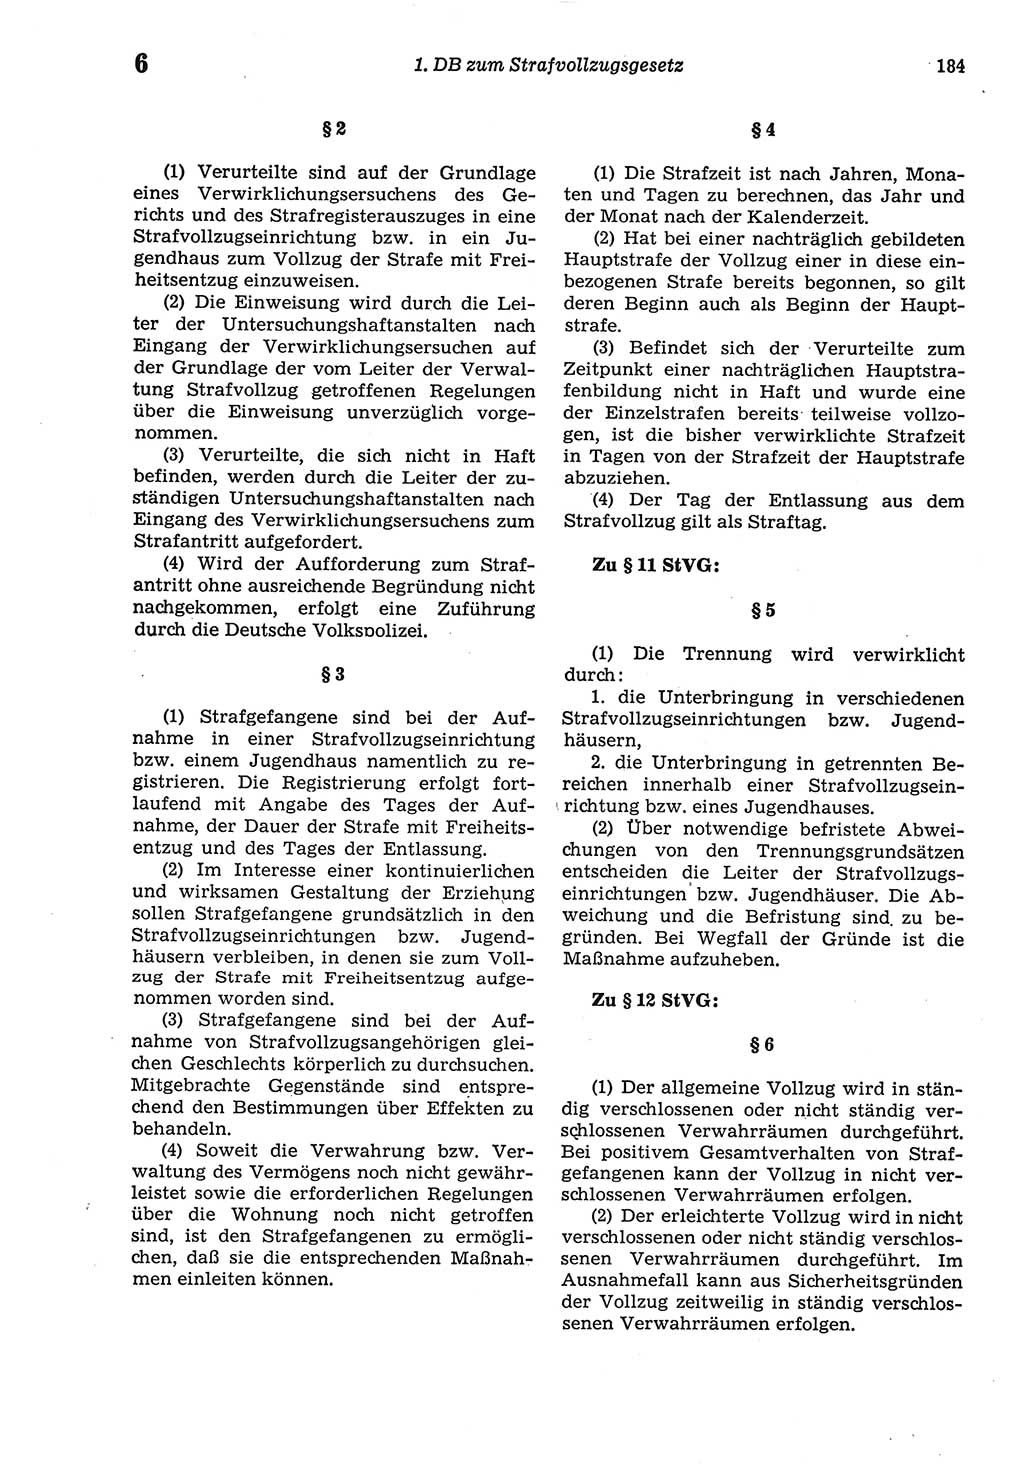 Strafprozeßordnung (StPO) der Deutschen Demokratischen Republik (DDR) sowie angrenzende Gesetze und Bestimmungen 1977, Seite 184 (StPO DDR Ges. Best. 1977, S. 184)